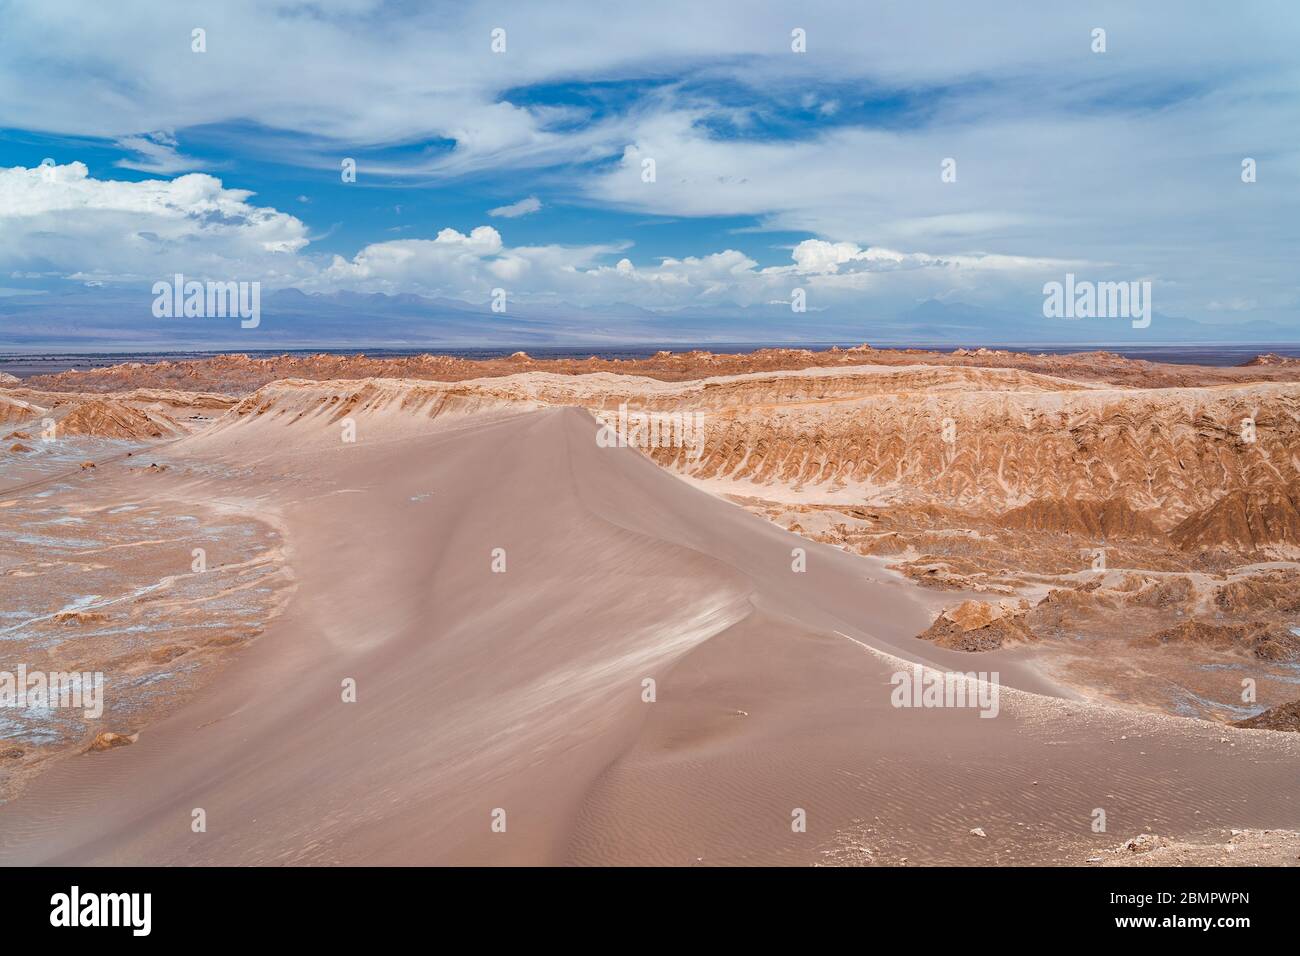 Dunes de sable à la Vallée de la Lune (en espagnol : Valle de la Luna) dans le désert d'Atacama, Chili, Amérique du Sud. Banque D'Images